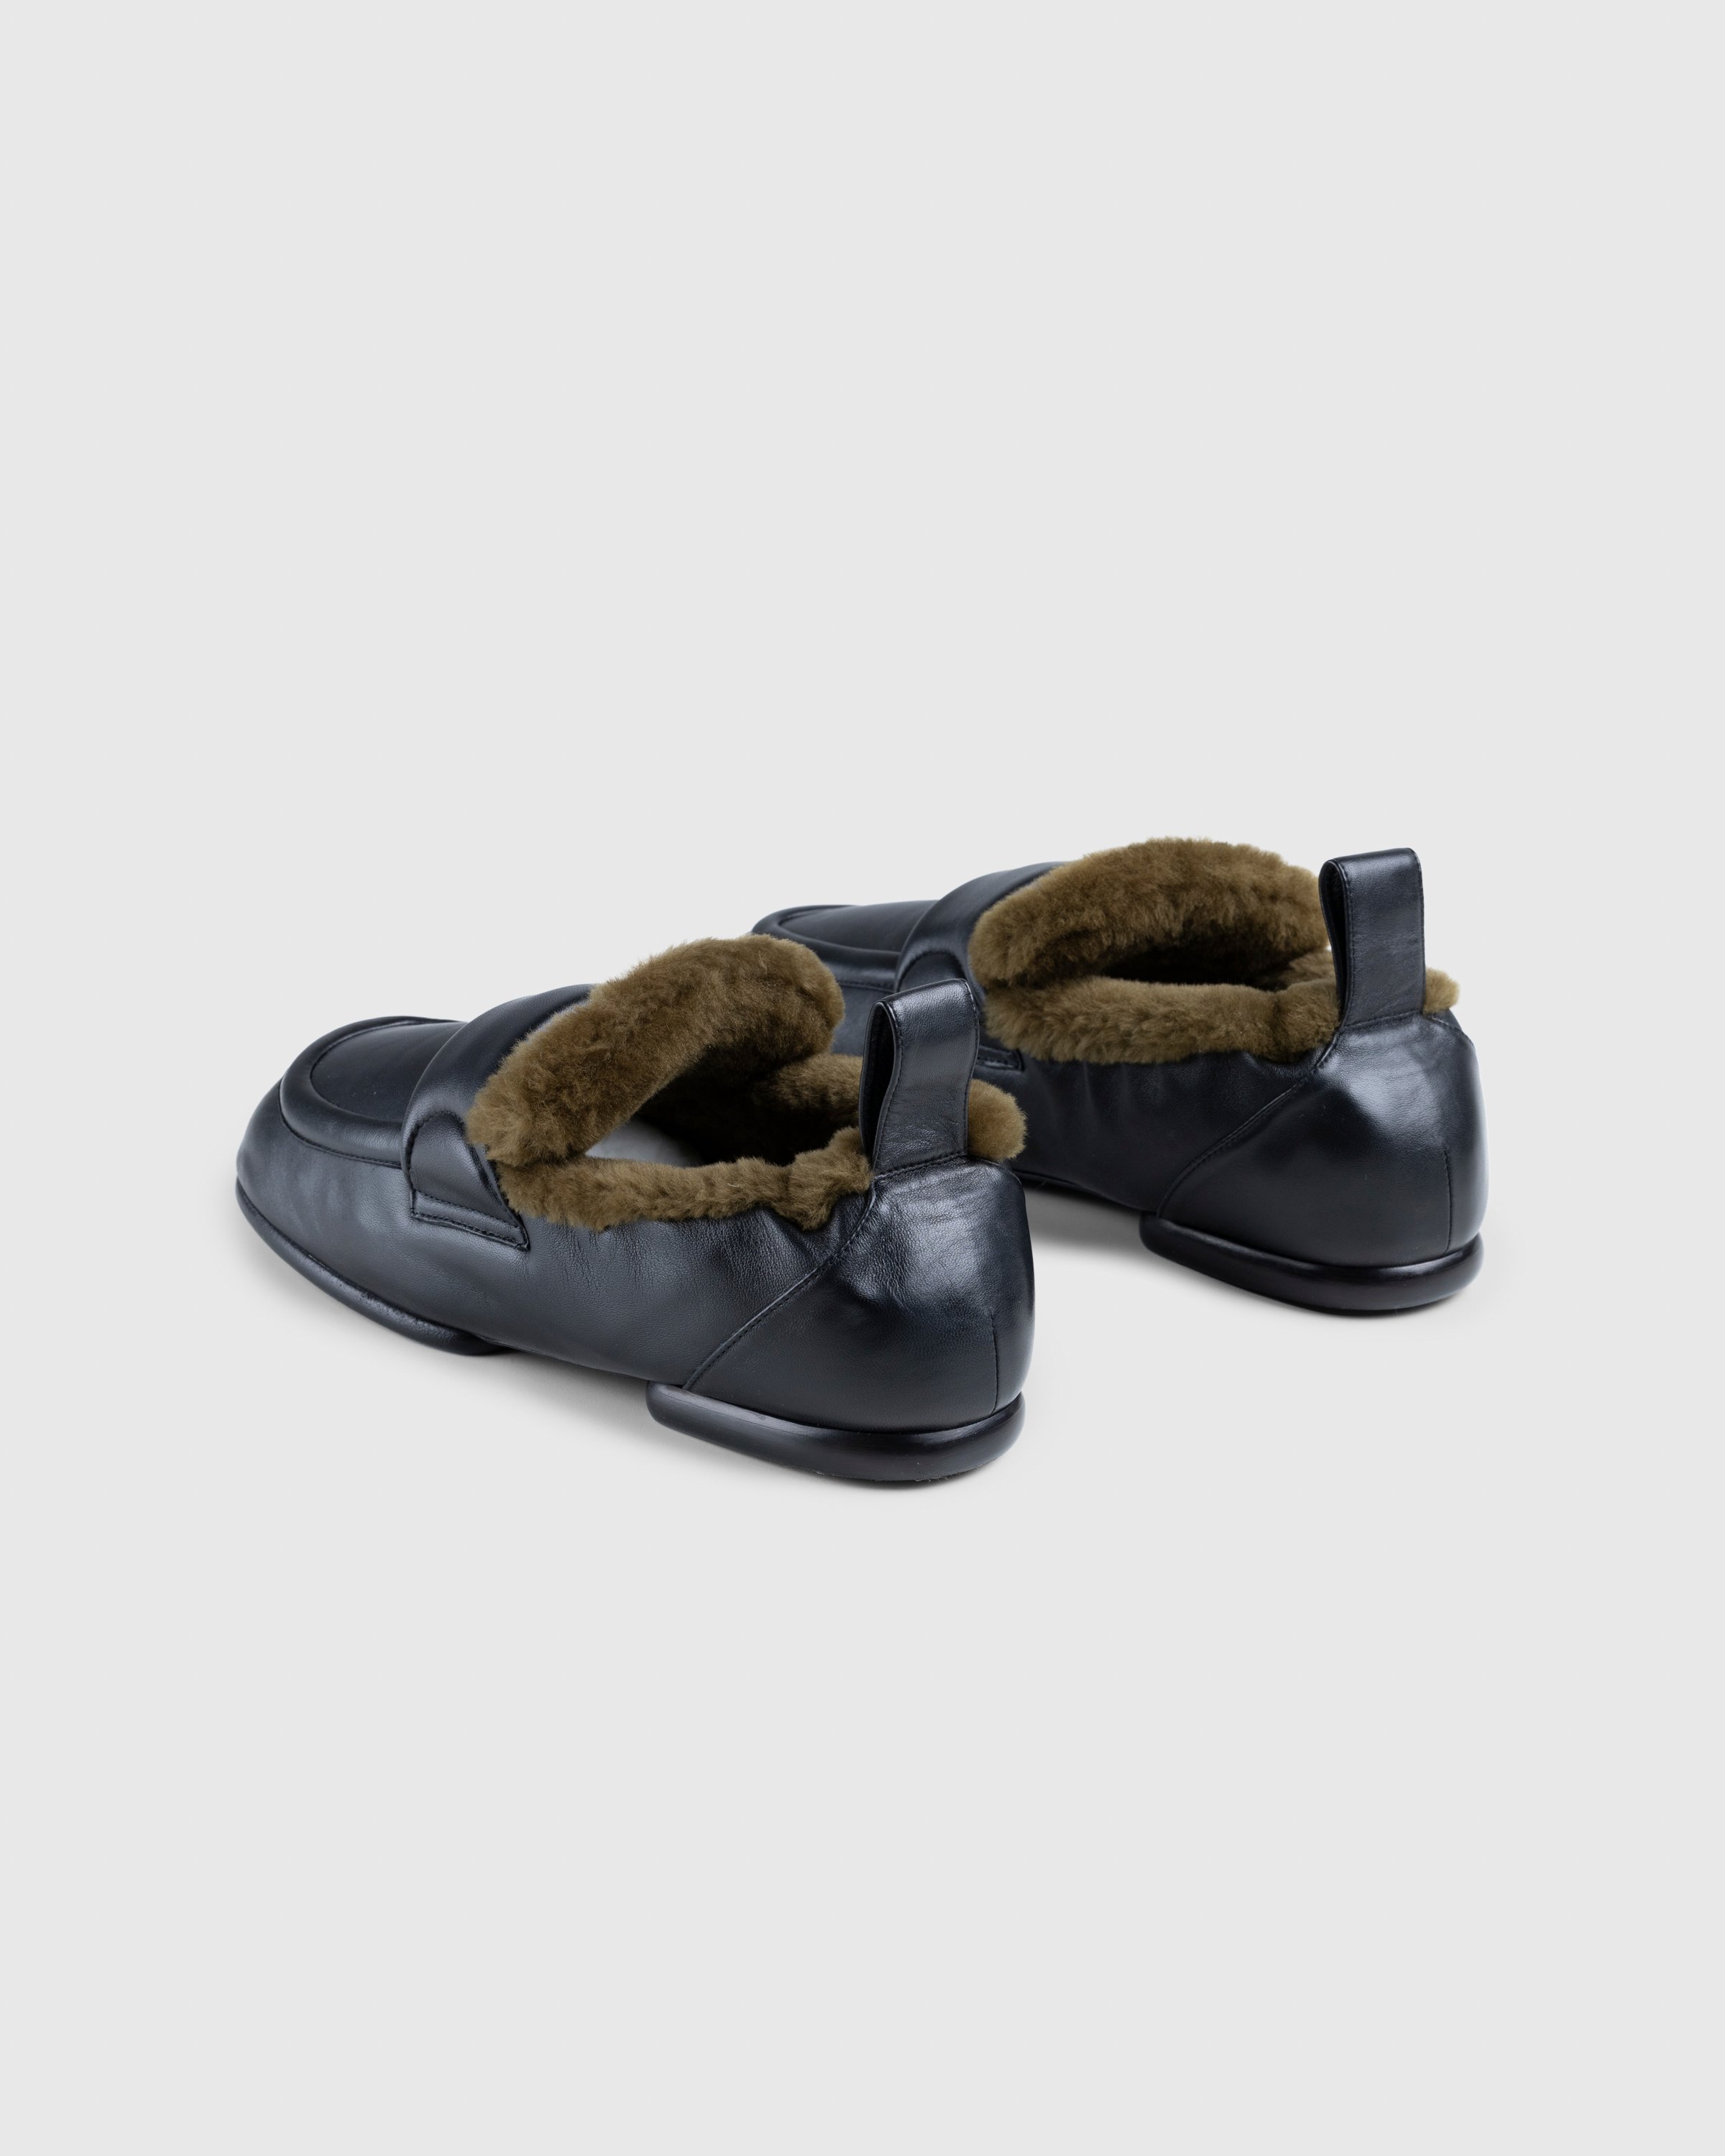 Dries van Noten - Padded Faux Fur Loafers Black - Footwear - Black - Image 4